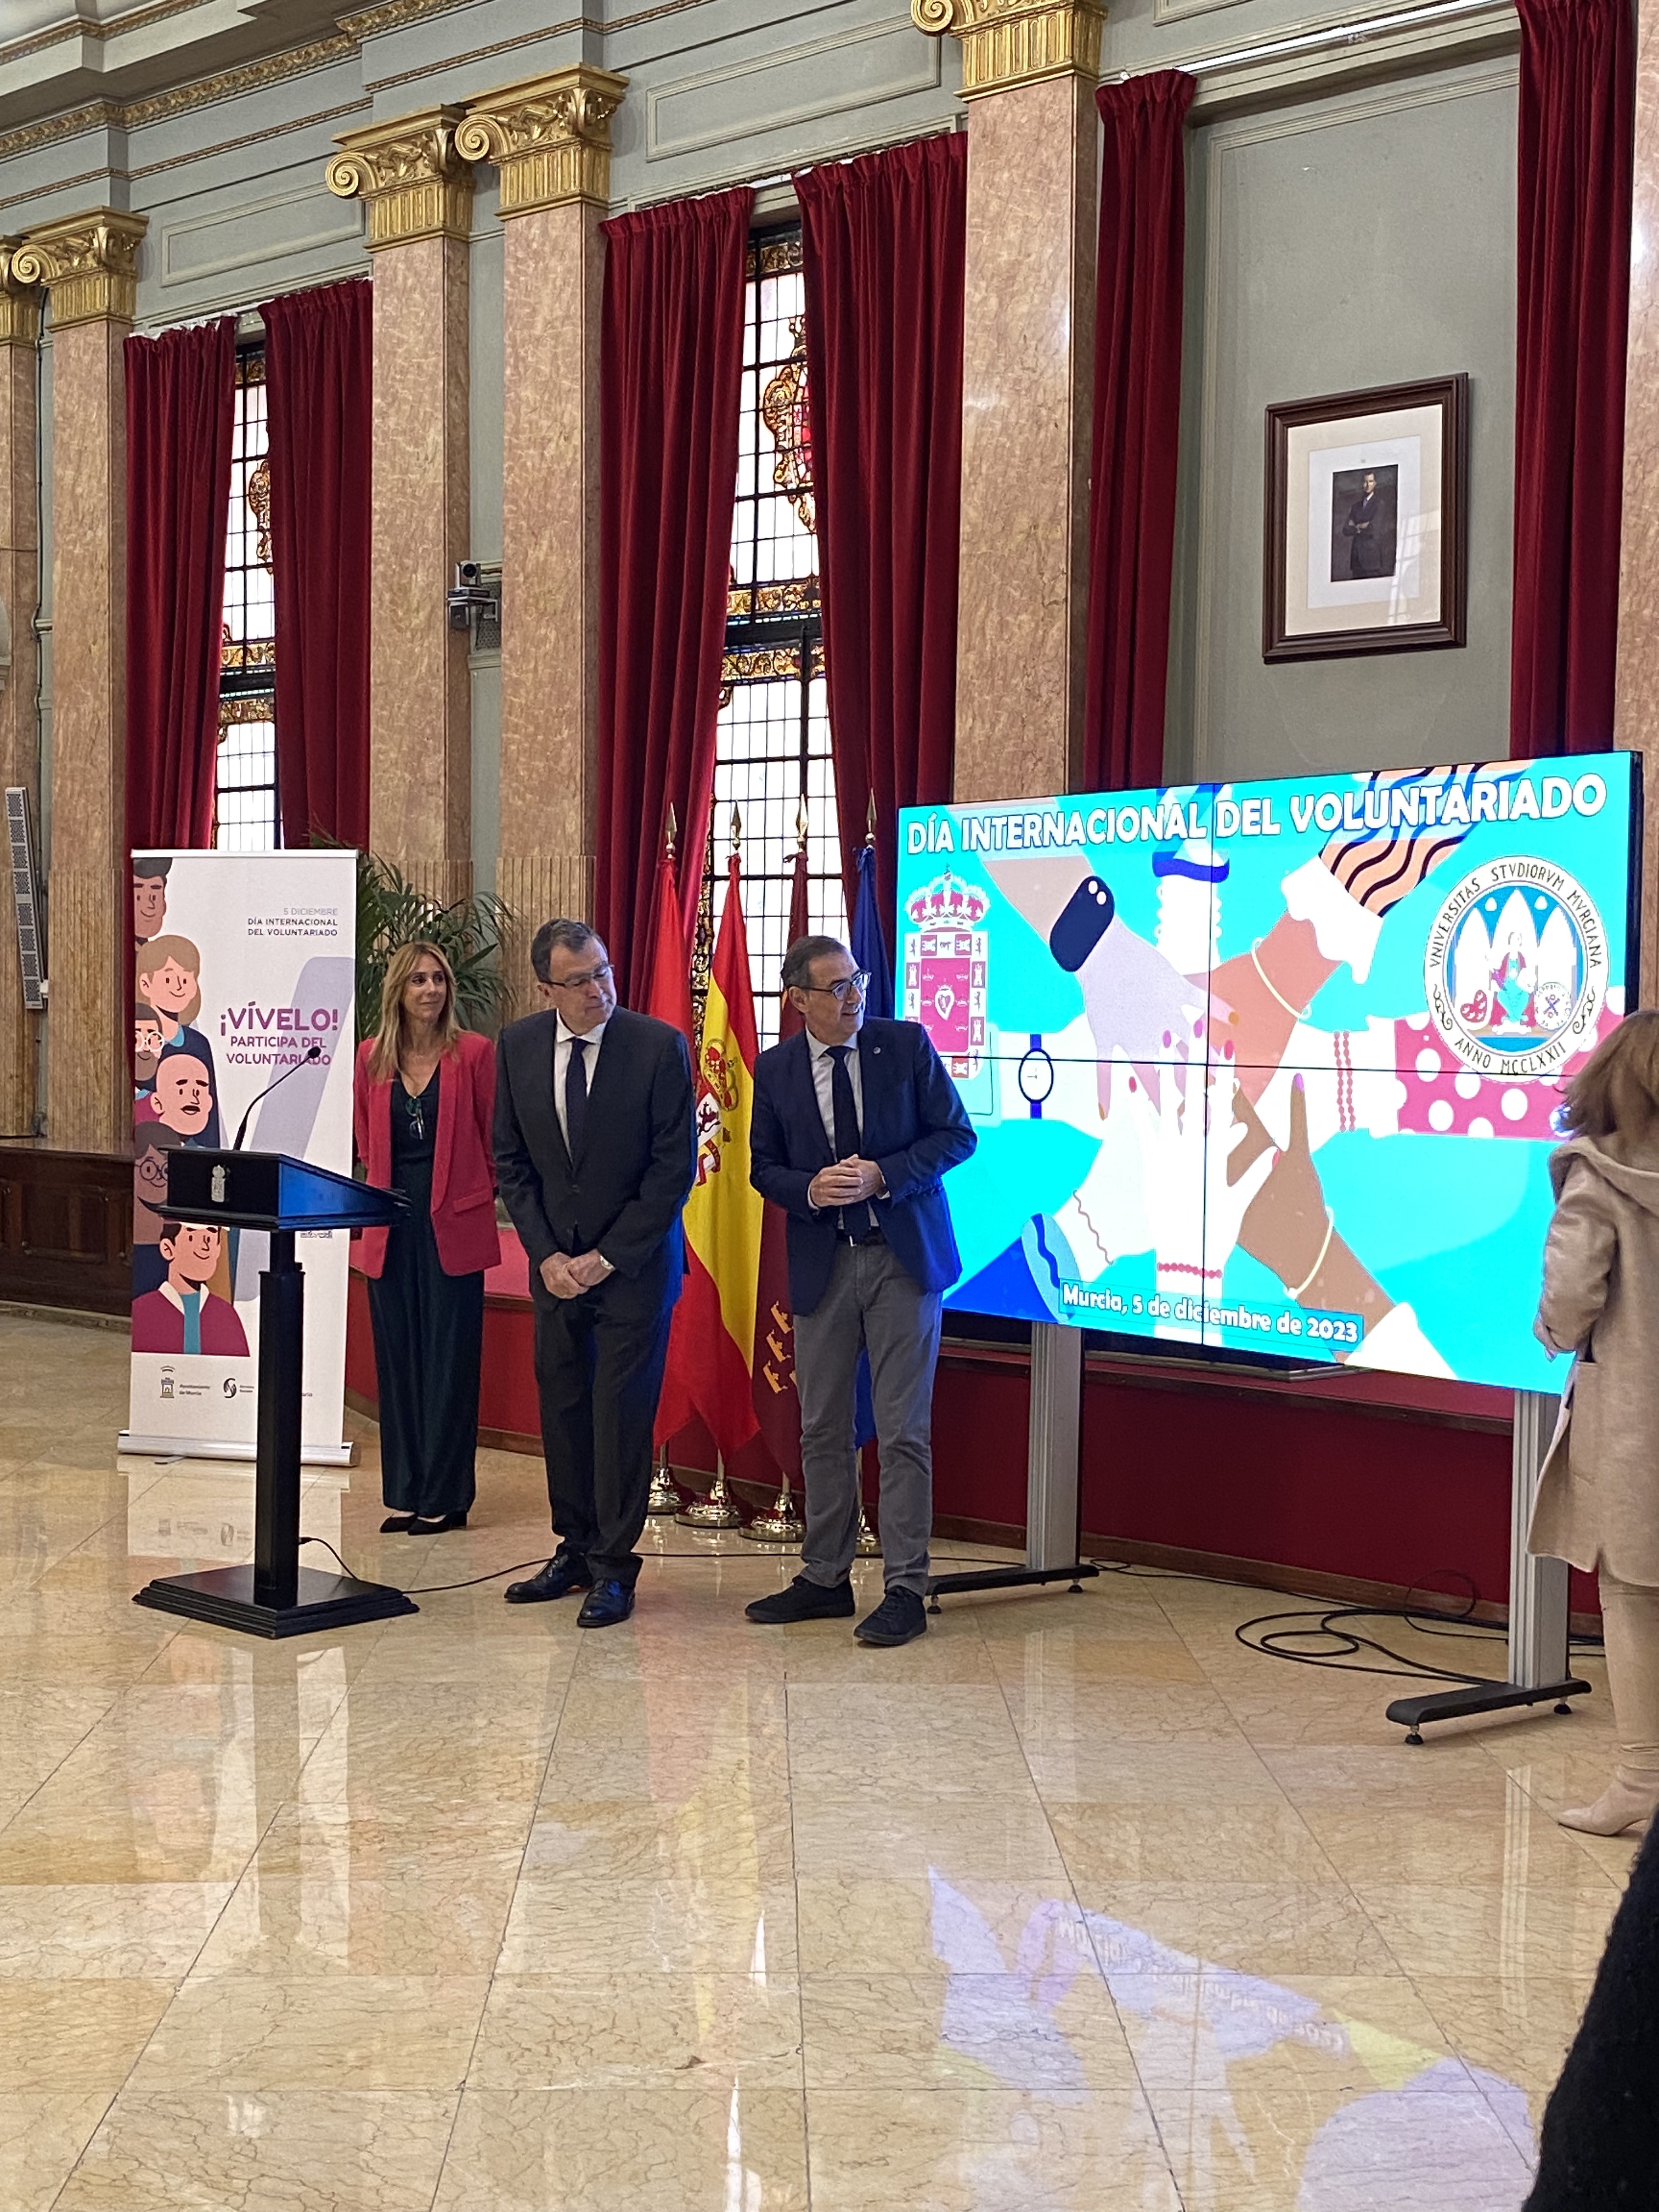 El Rector y el Alcalde de Murcia en la presentación del acto por el día Internacional del voluntariado